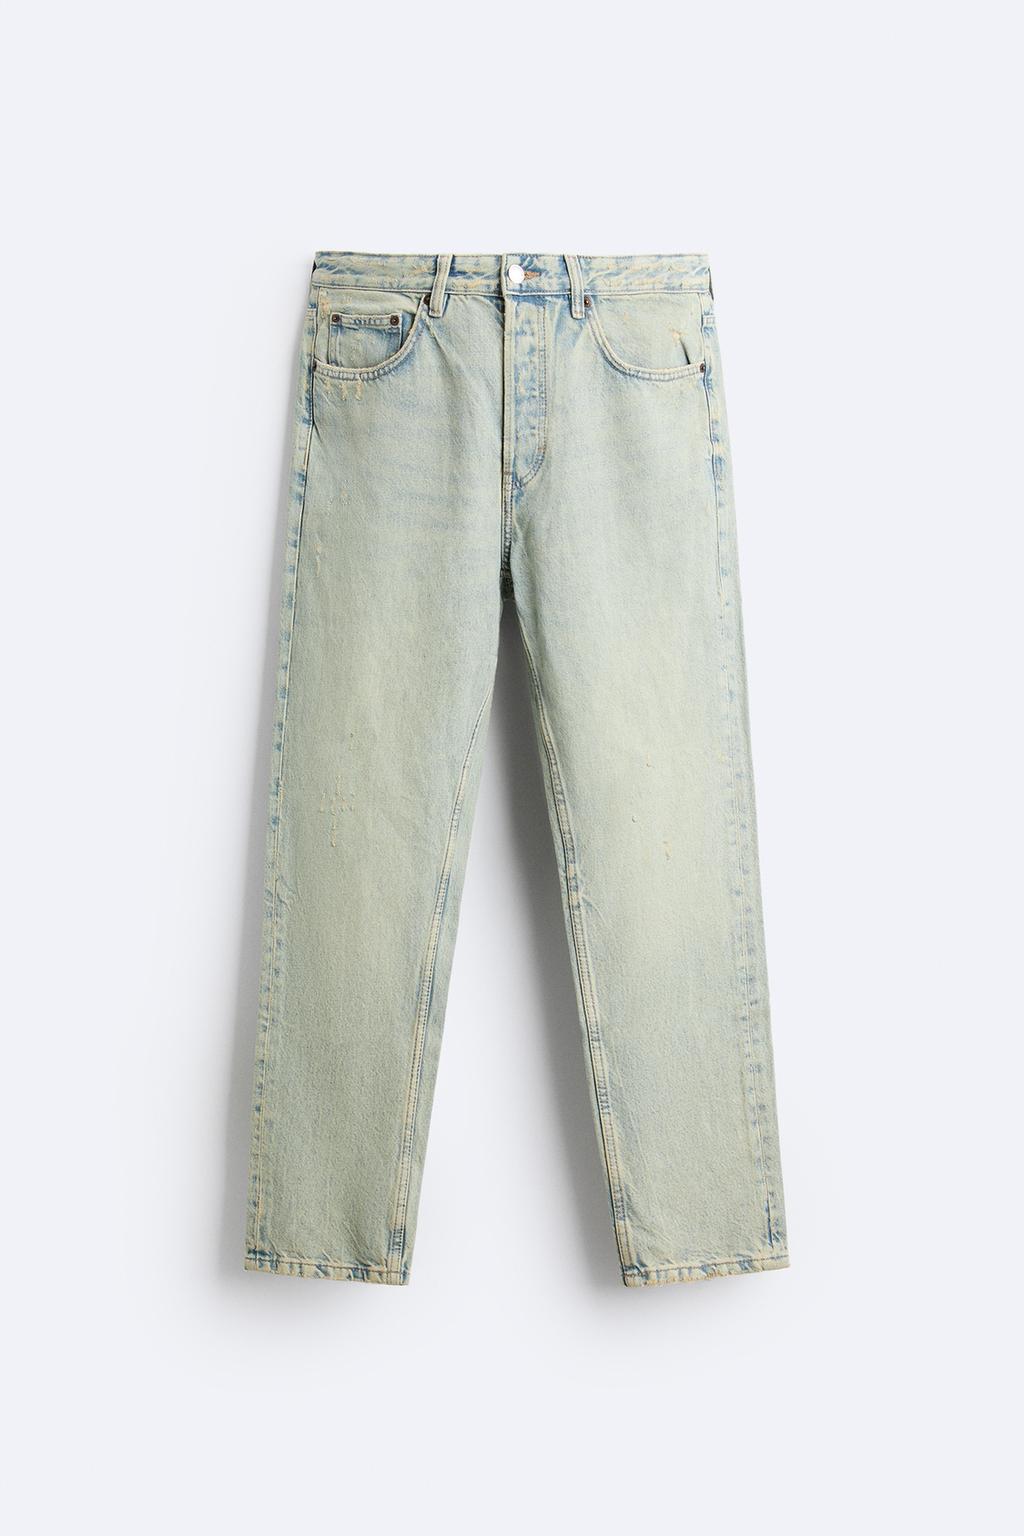 Узкие джинсы укороченного кроя ZARA, цвет морской волны джинсы узкие 78 застежка на молнию на щиколотке 38 fr 44 rus розовый